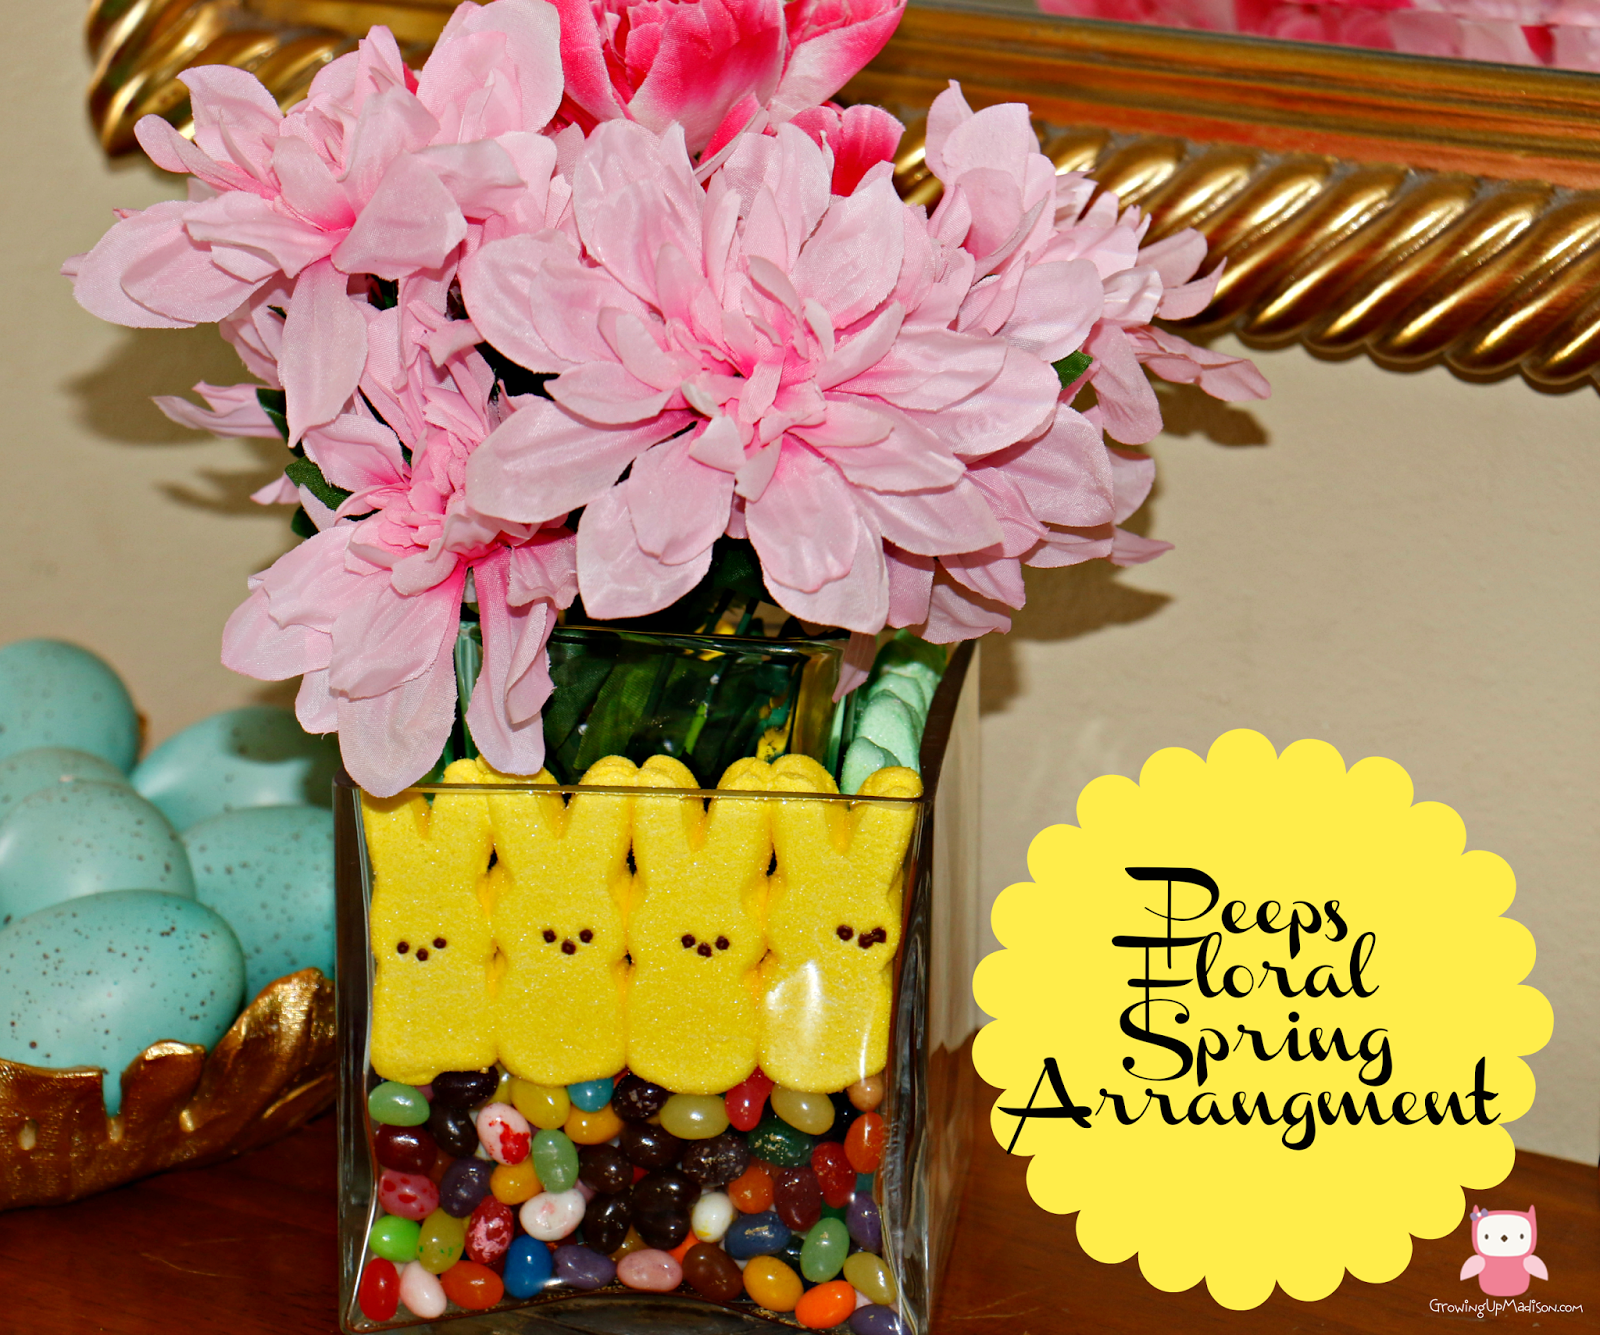 PEEPS Floral Spring Arrangement – Easy Craft for Kids